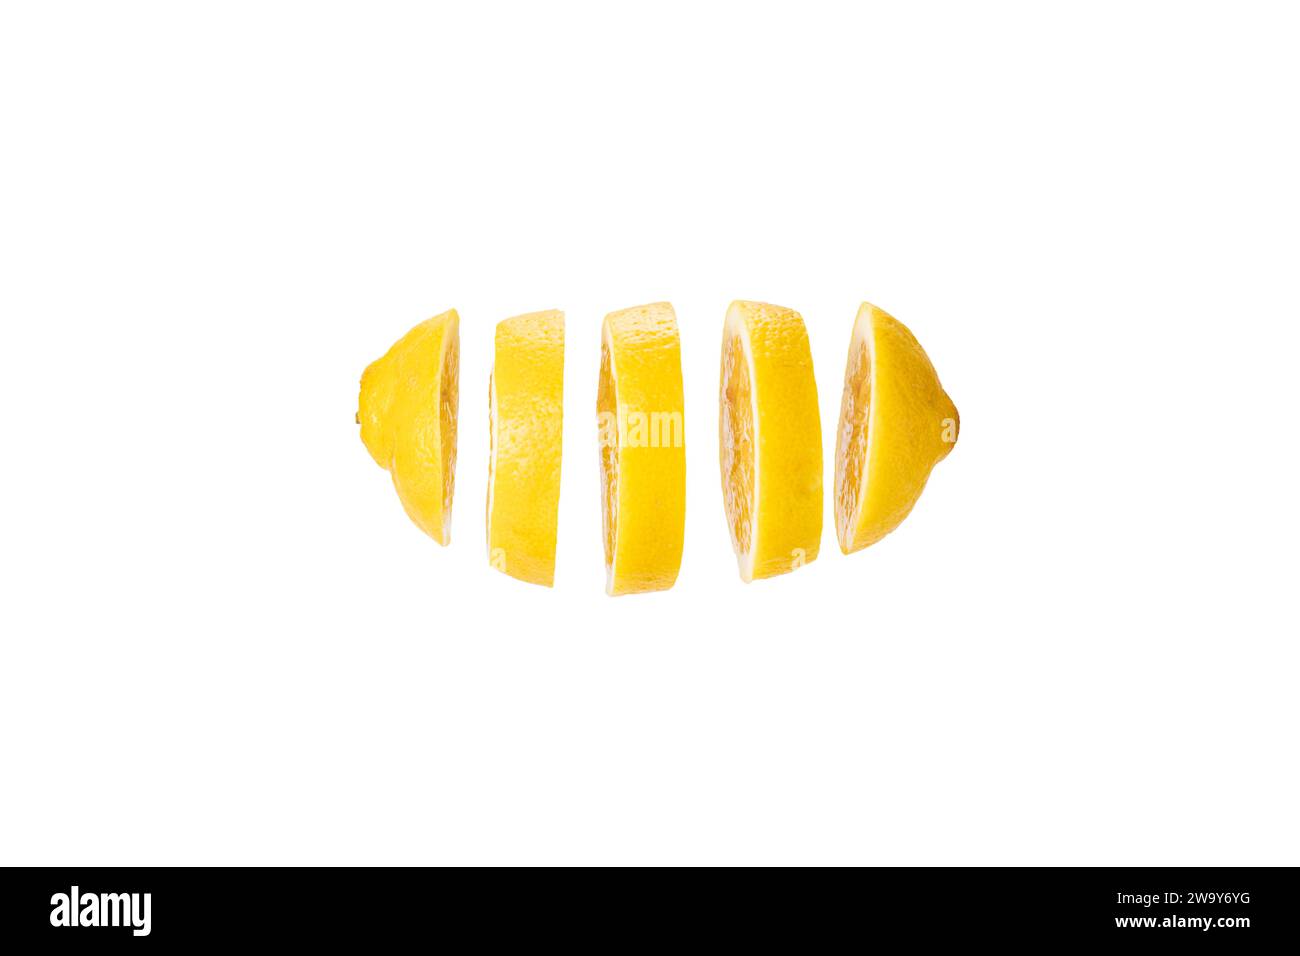 Zitrone in Scheiben geschnitten und frei schwebend vor weißem hintergrund. Un citron coupé en tranches devant un fond blanc Banque D'Images